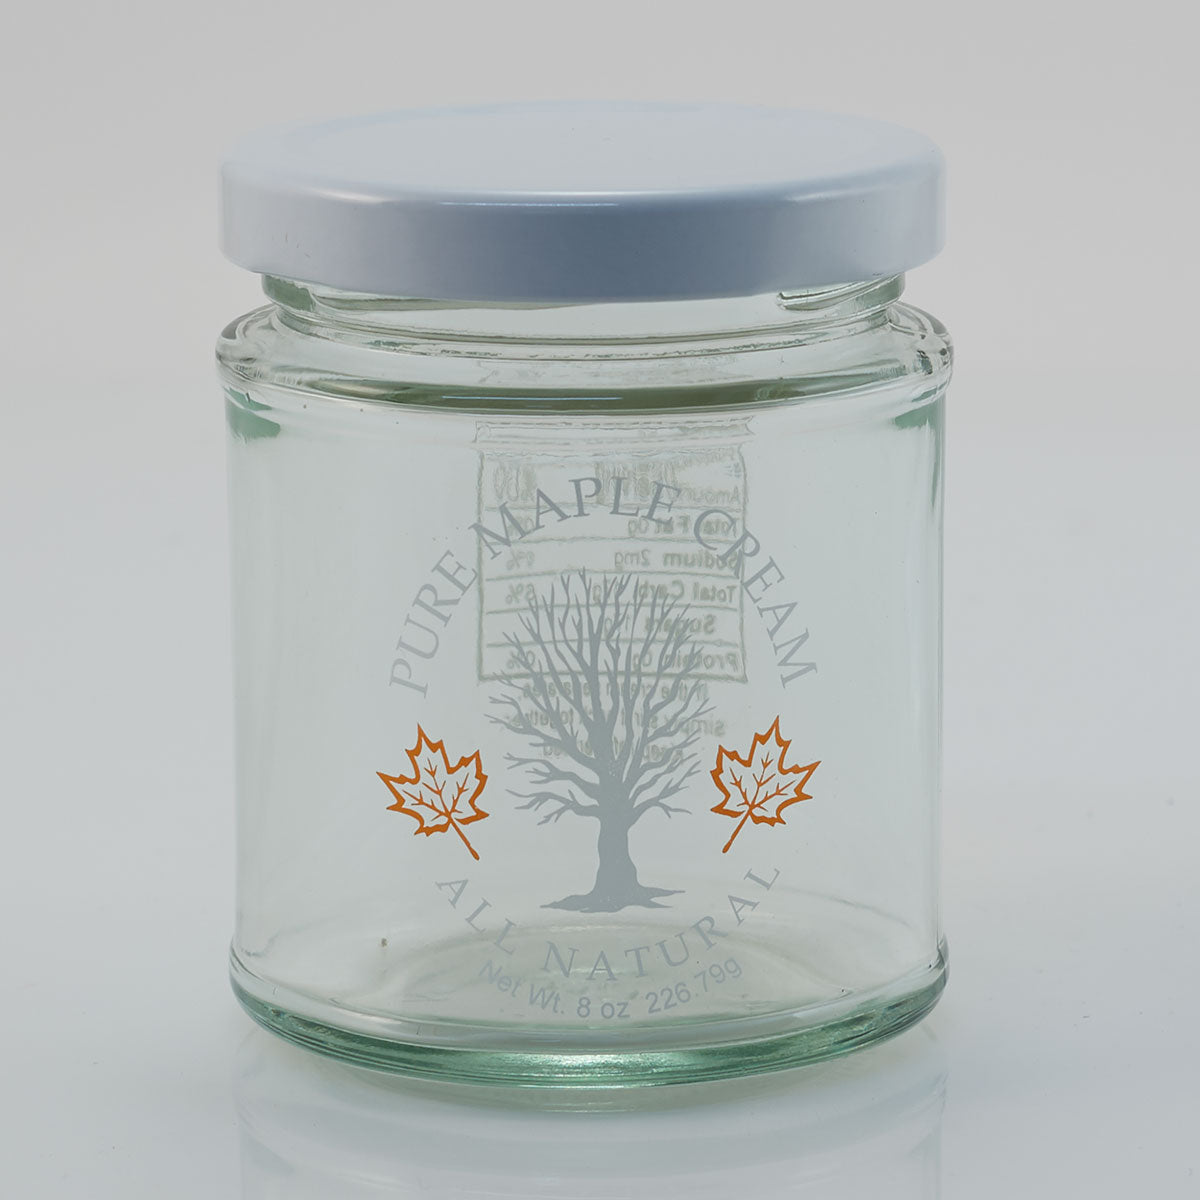 1/2 lb Printed Pure Maple Cream Glass Jar (24 per Case)